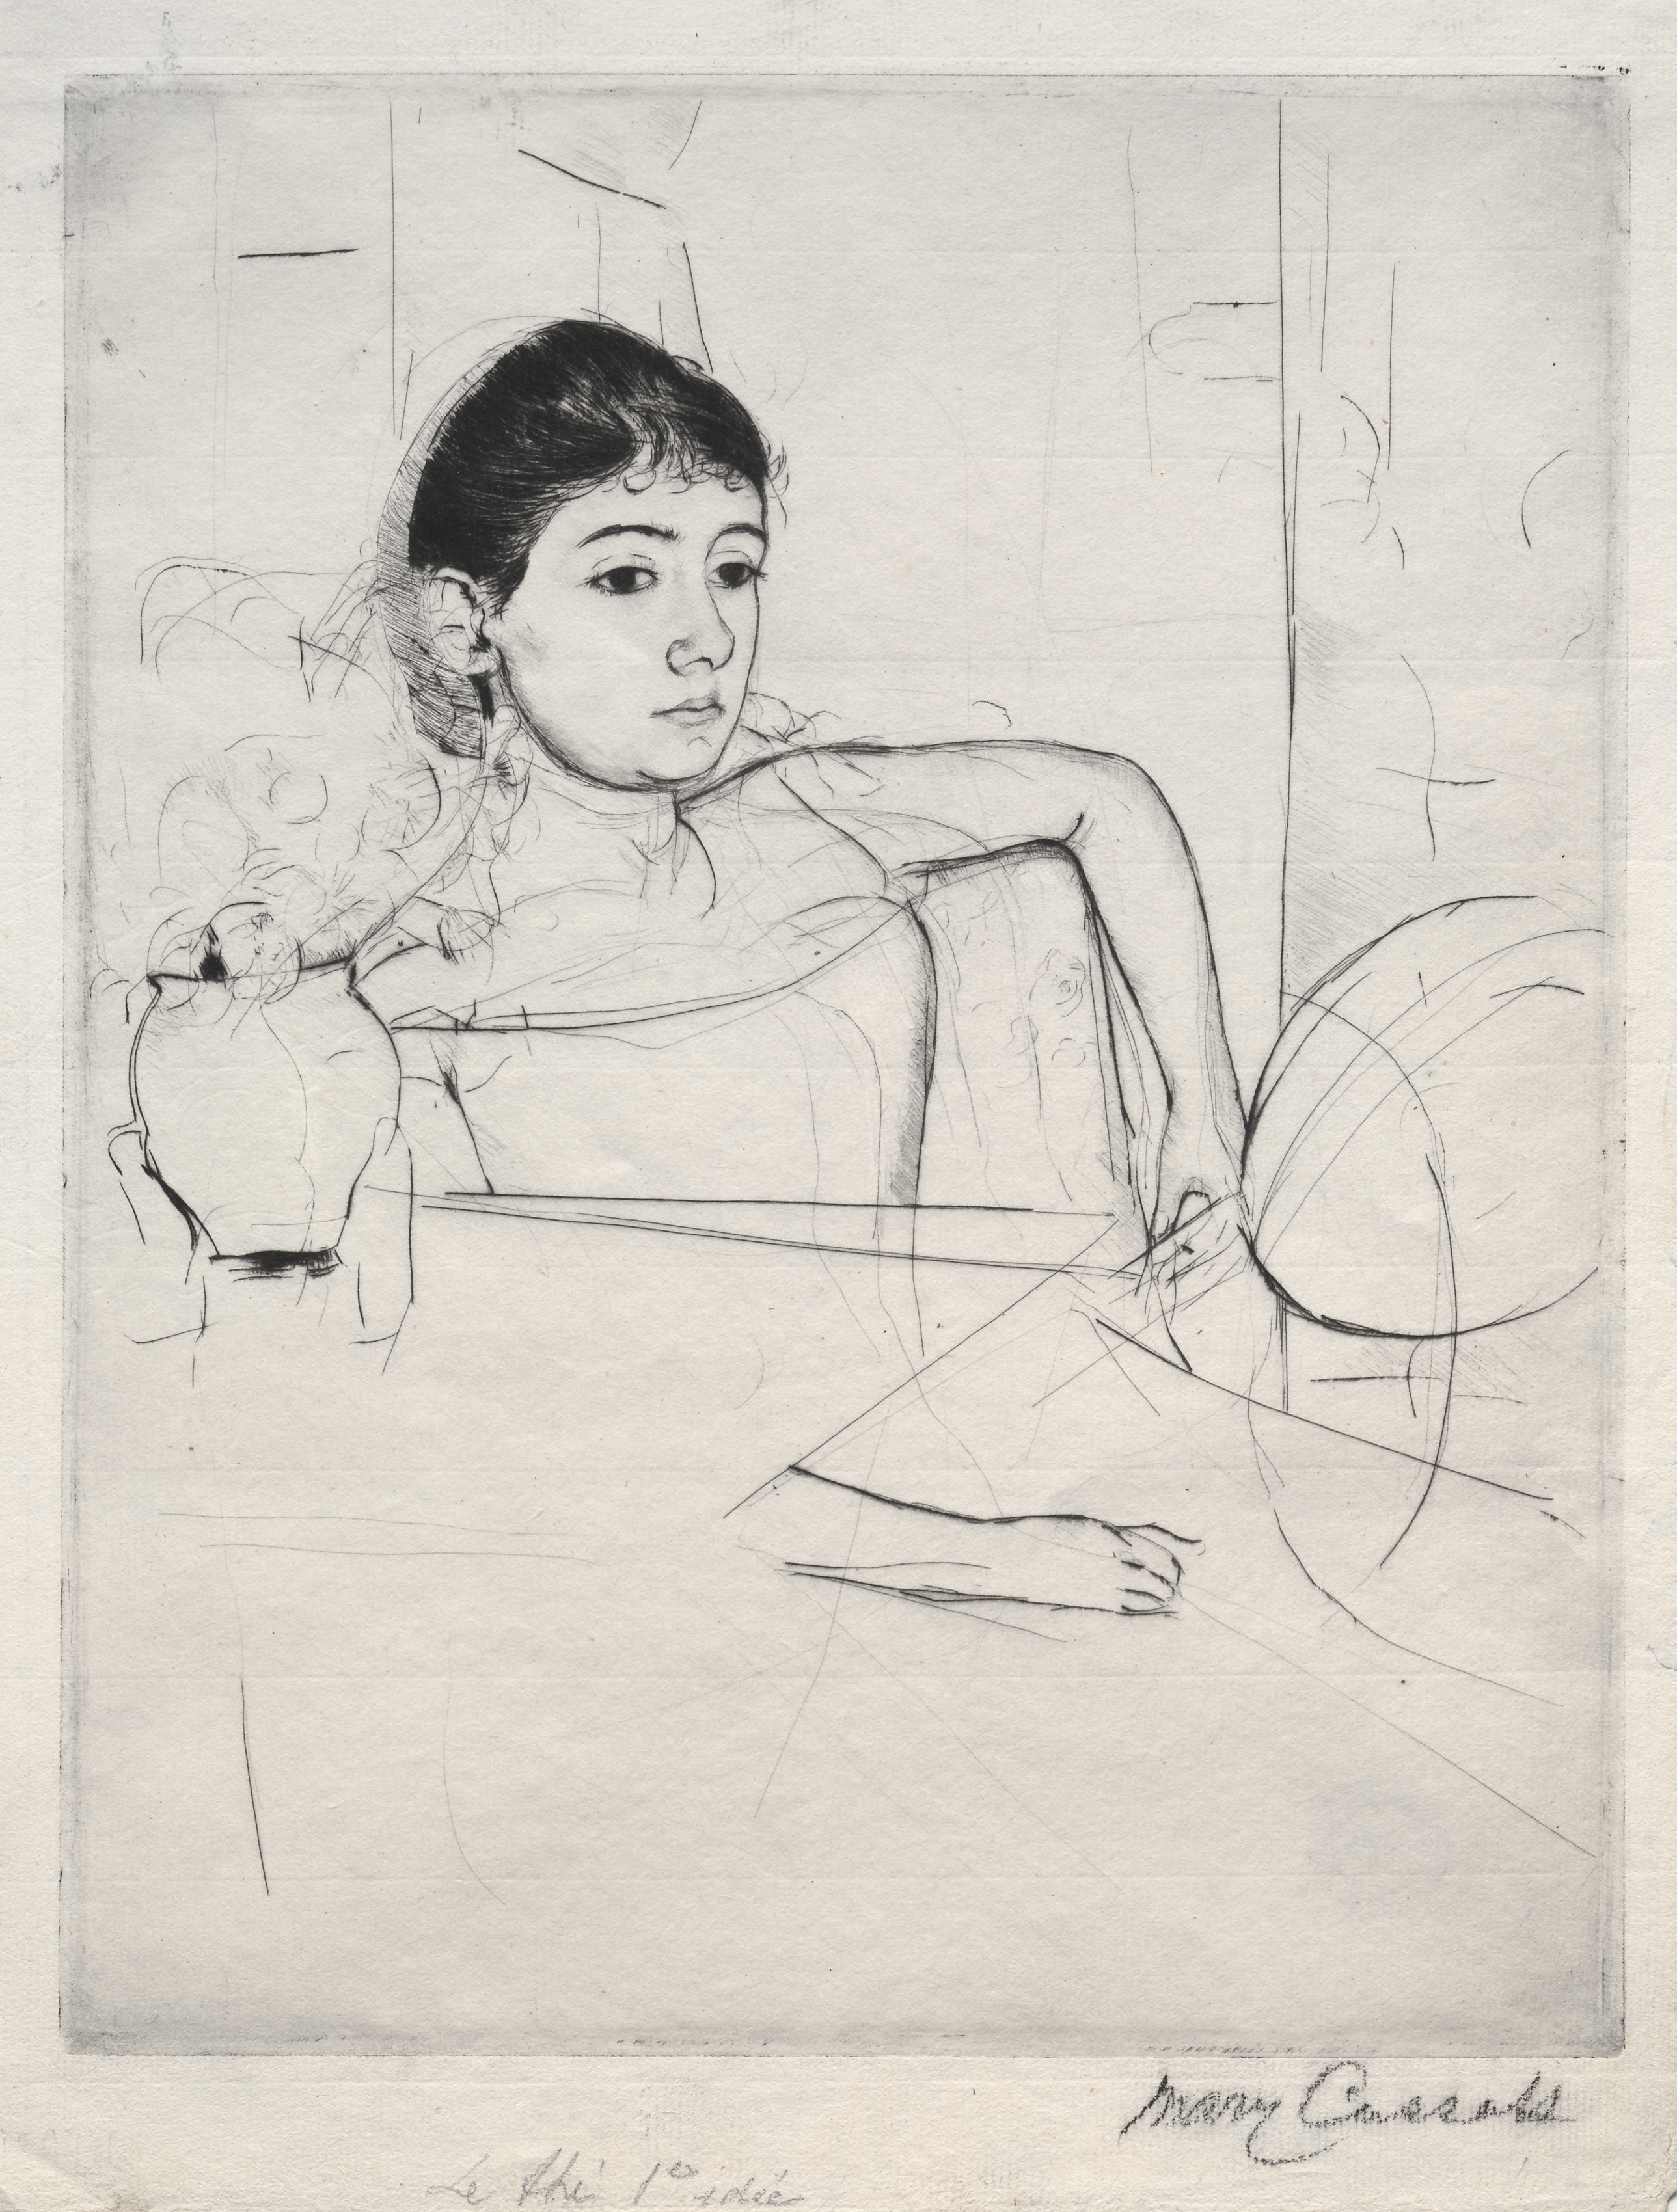 深色头发的Mimi by 玛丽· 卡萨特 - 1889年 - 26.99 x 21.43 cm 克利夫兰艺术博物馆